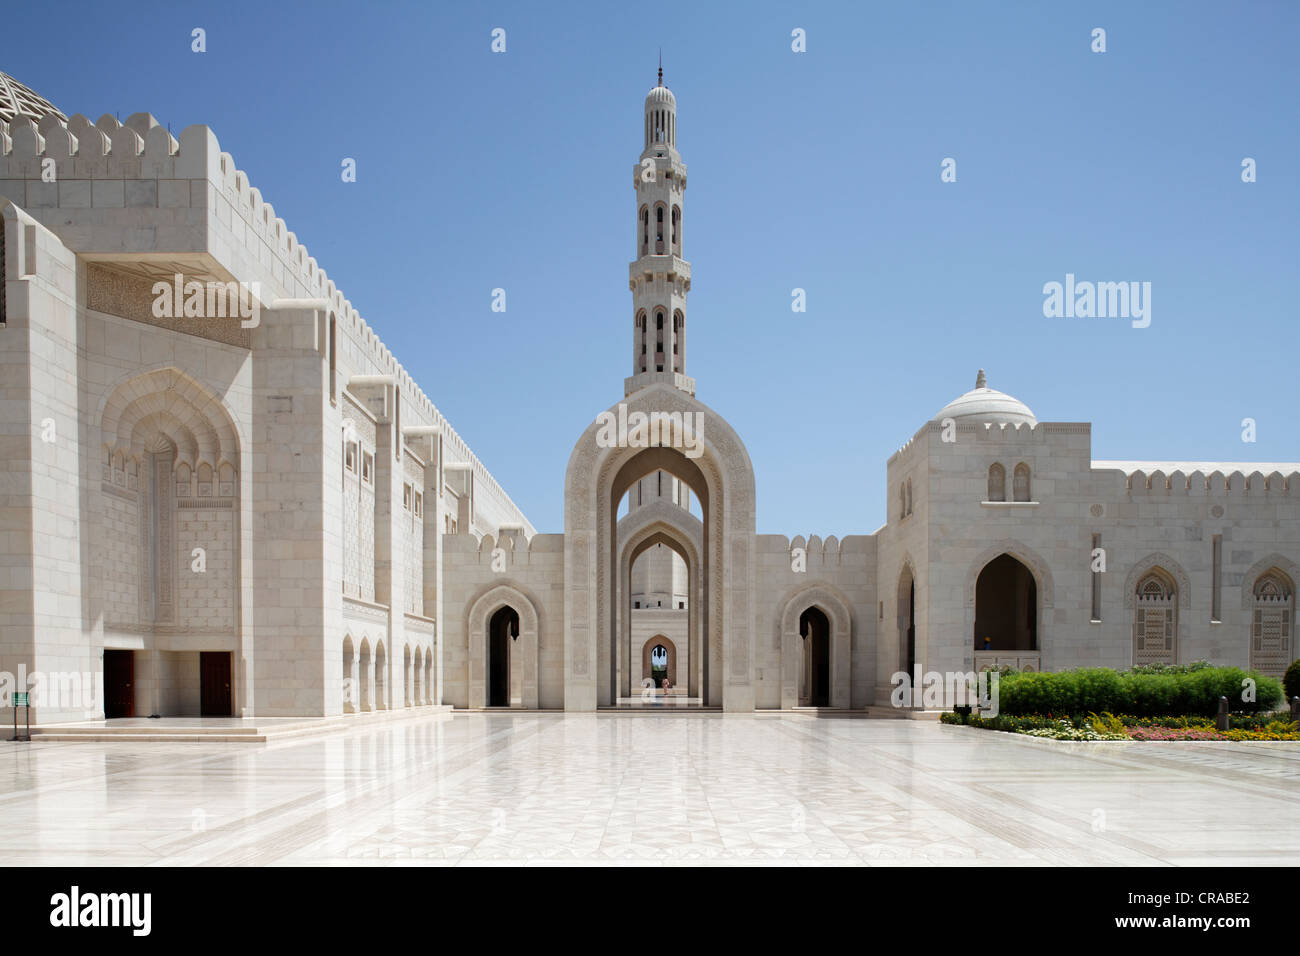 Quadrat mit Spitzbogen, Tor, Minarett, Sultan Qaboos Grand Mosque, Hauptstadt Muscat, Sultanat Oman, Golf-Staaten Stockfoto